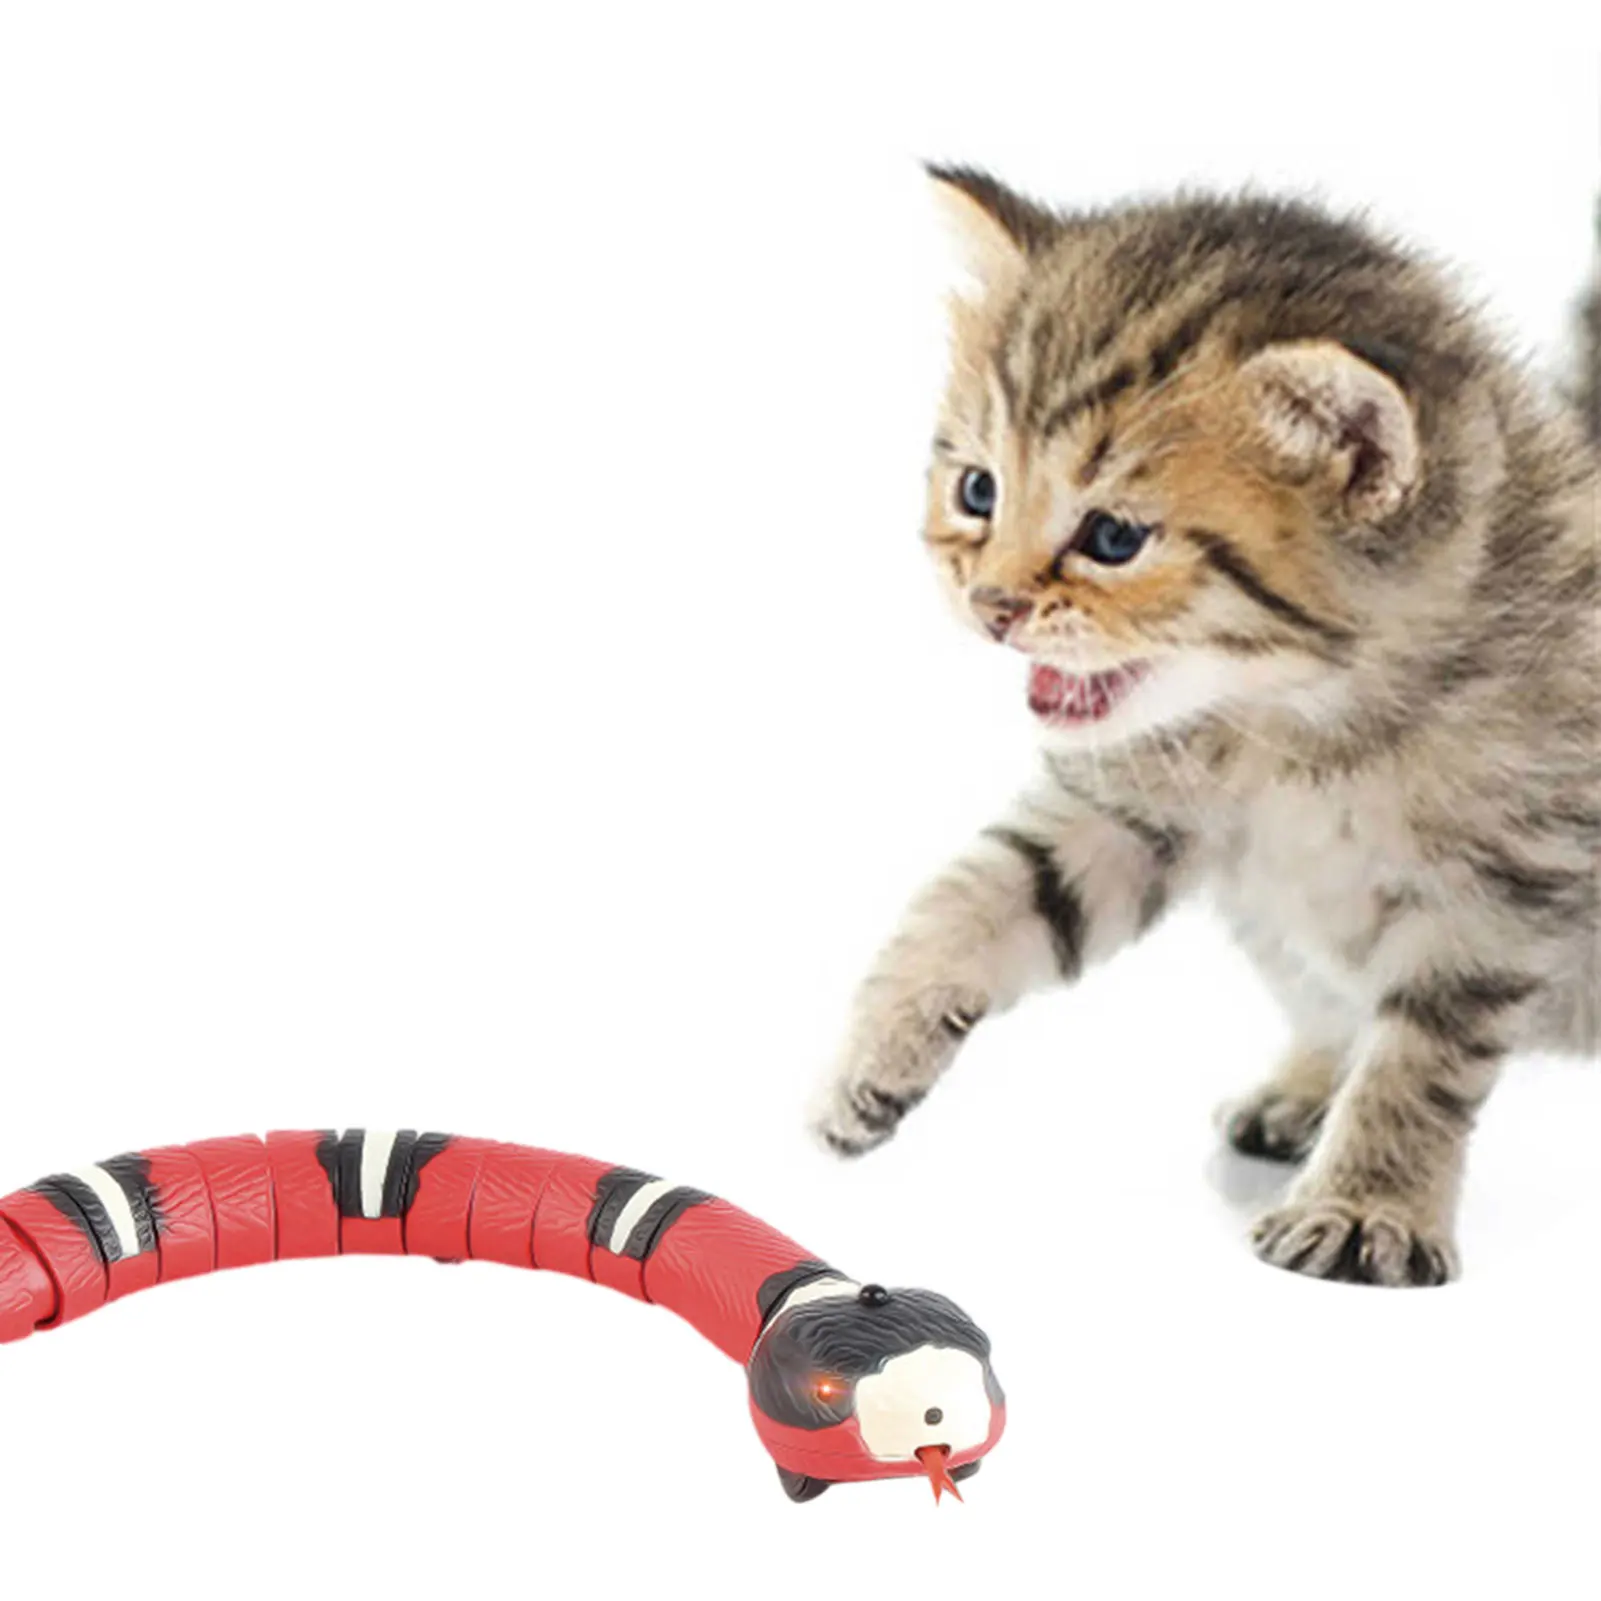 Cobrinha Eletrônica Inteligente - Smart Pet Snake